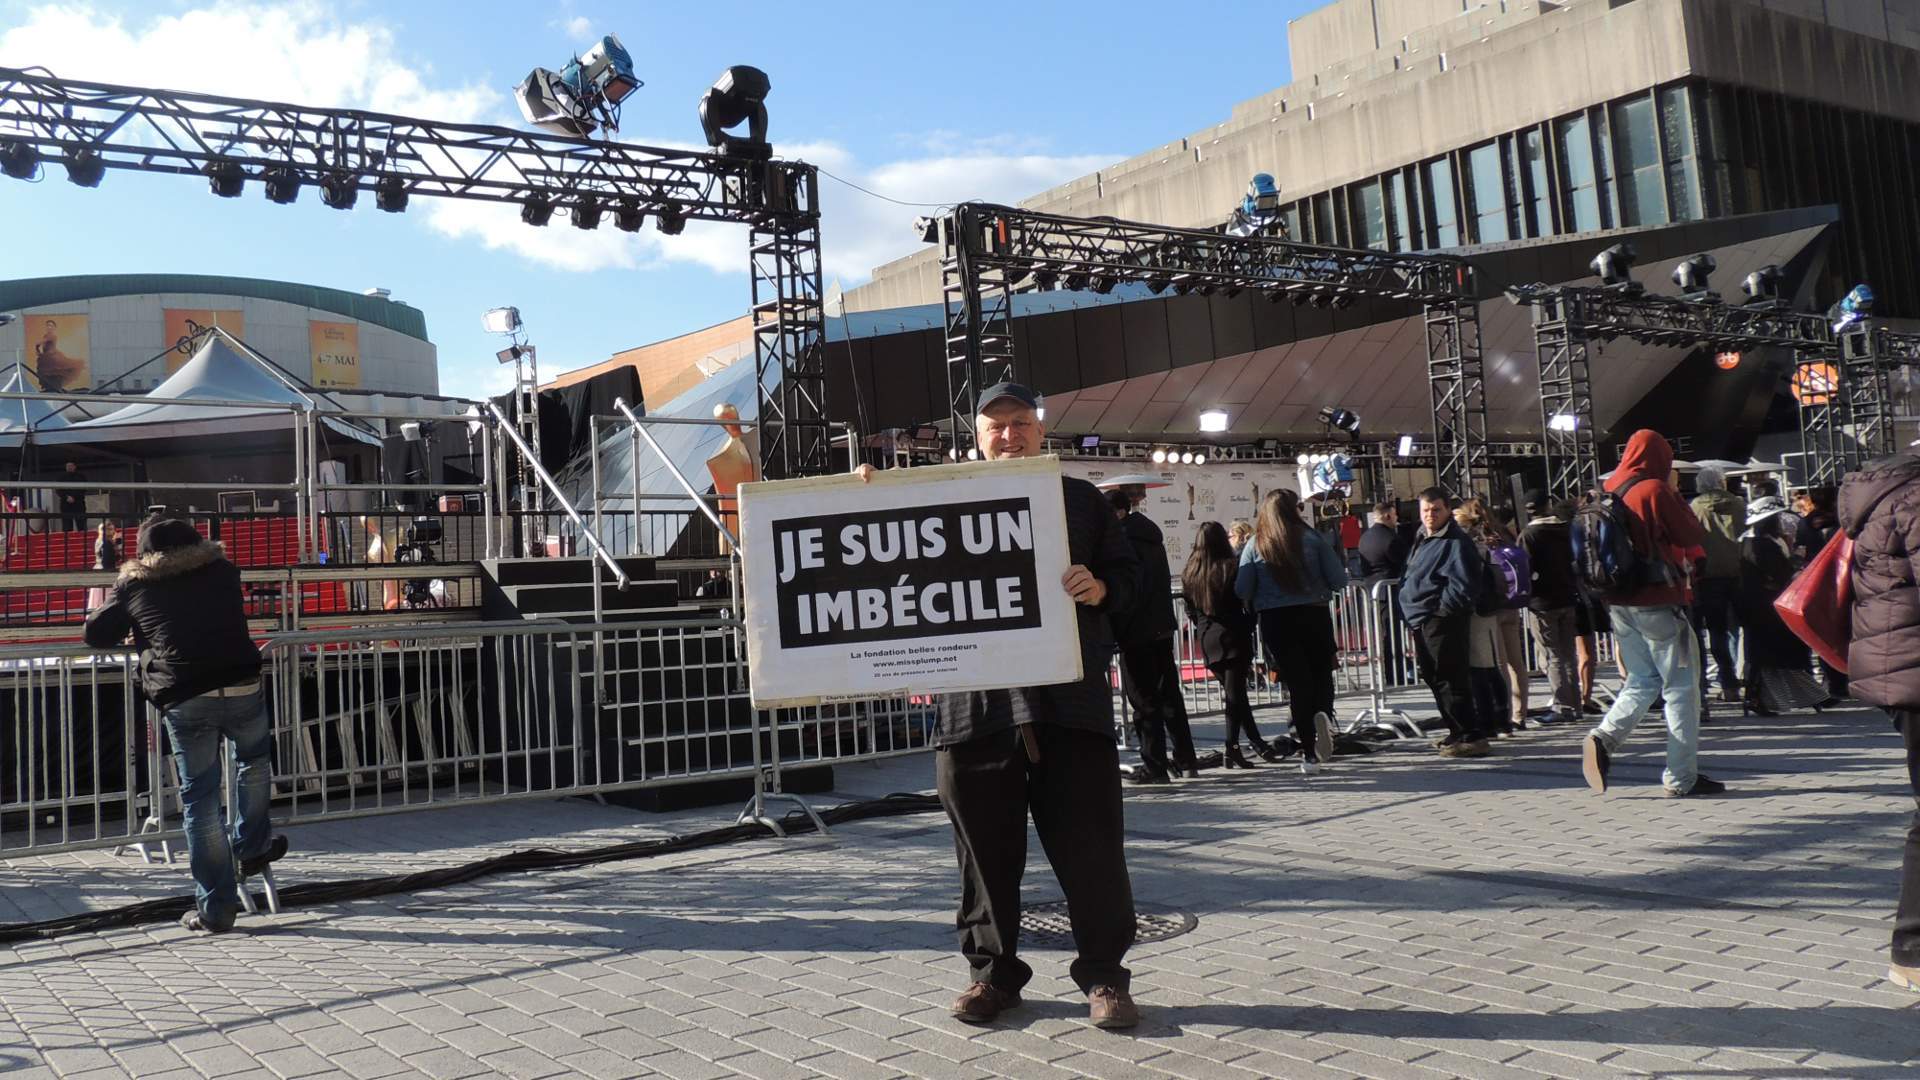 L'imbécile qui manifeste au gala artis 2016 devant devant place des arts à Montréal